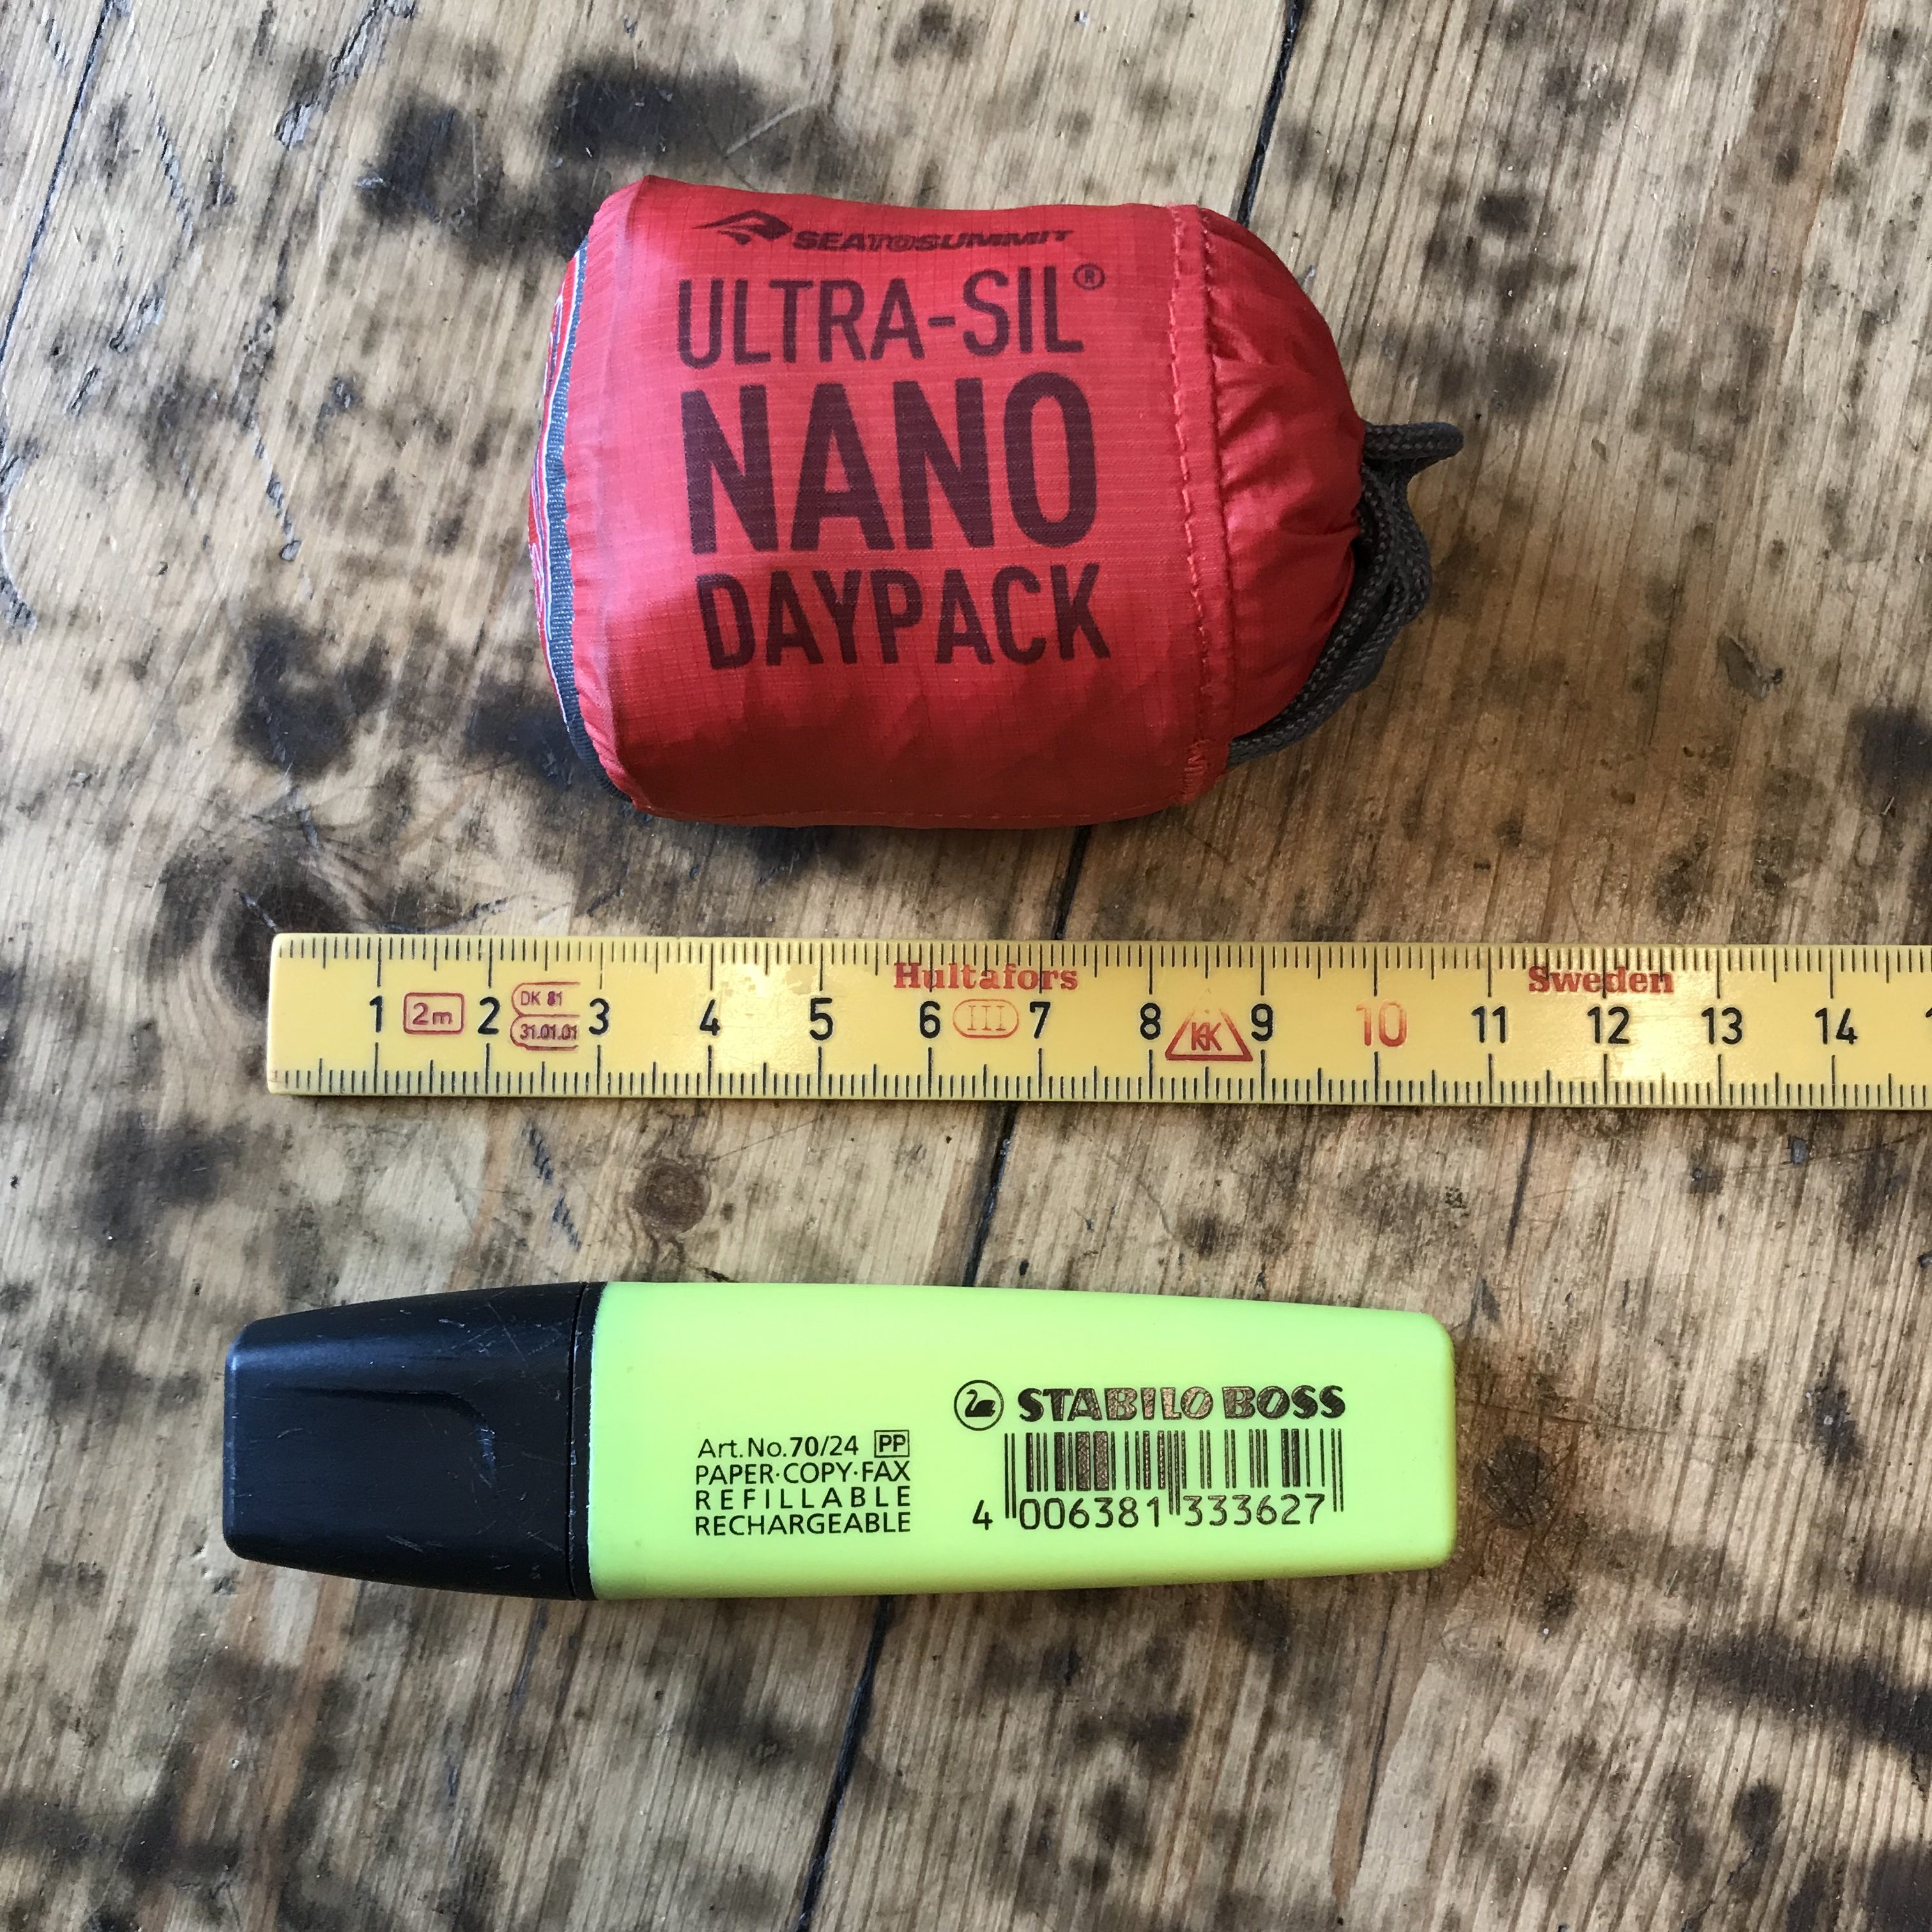 Sea To Summit Ultra-Sil Nano Daypack er den rygsæk jeg kender til med mindst pakvolumen. 